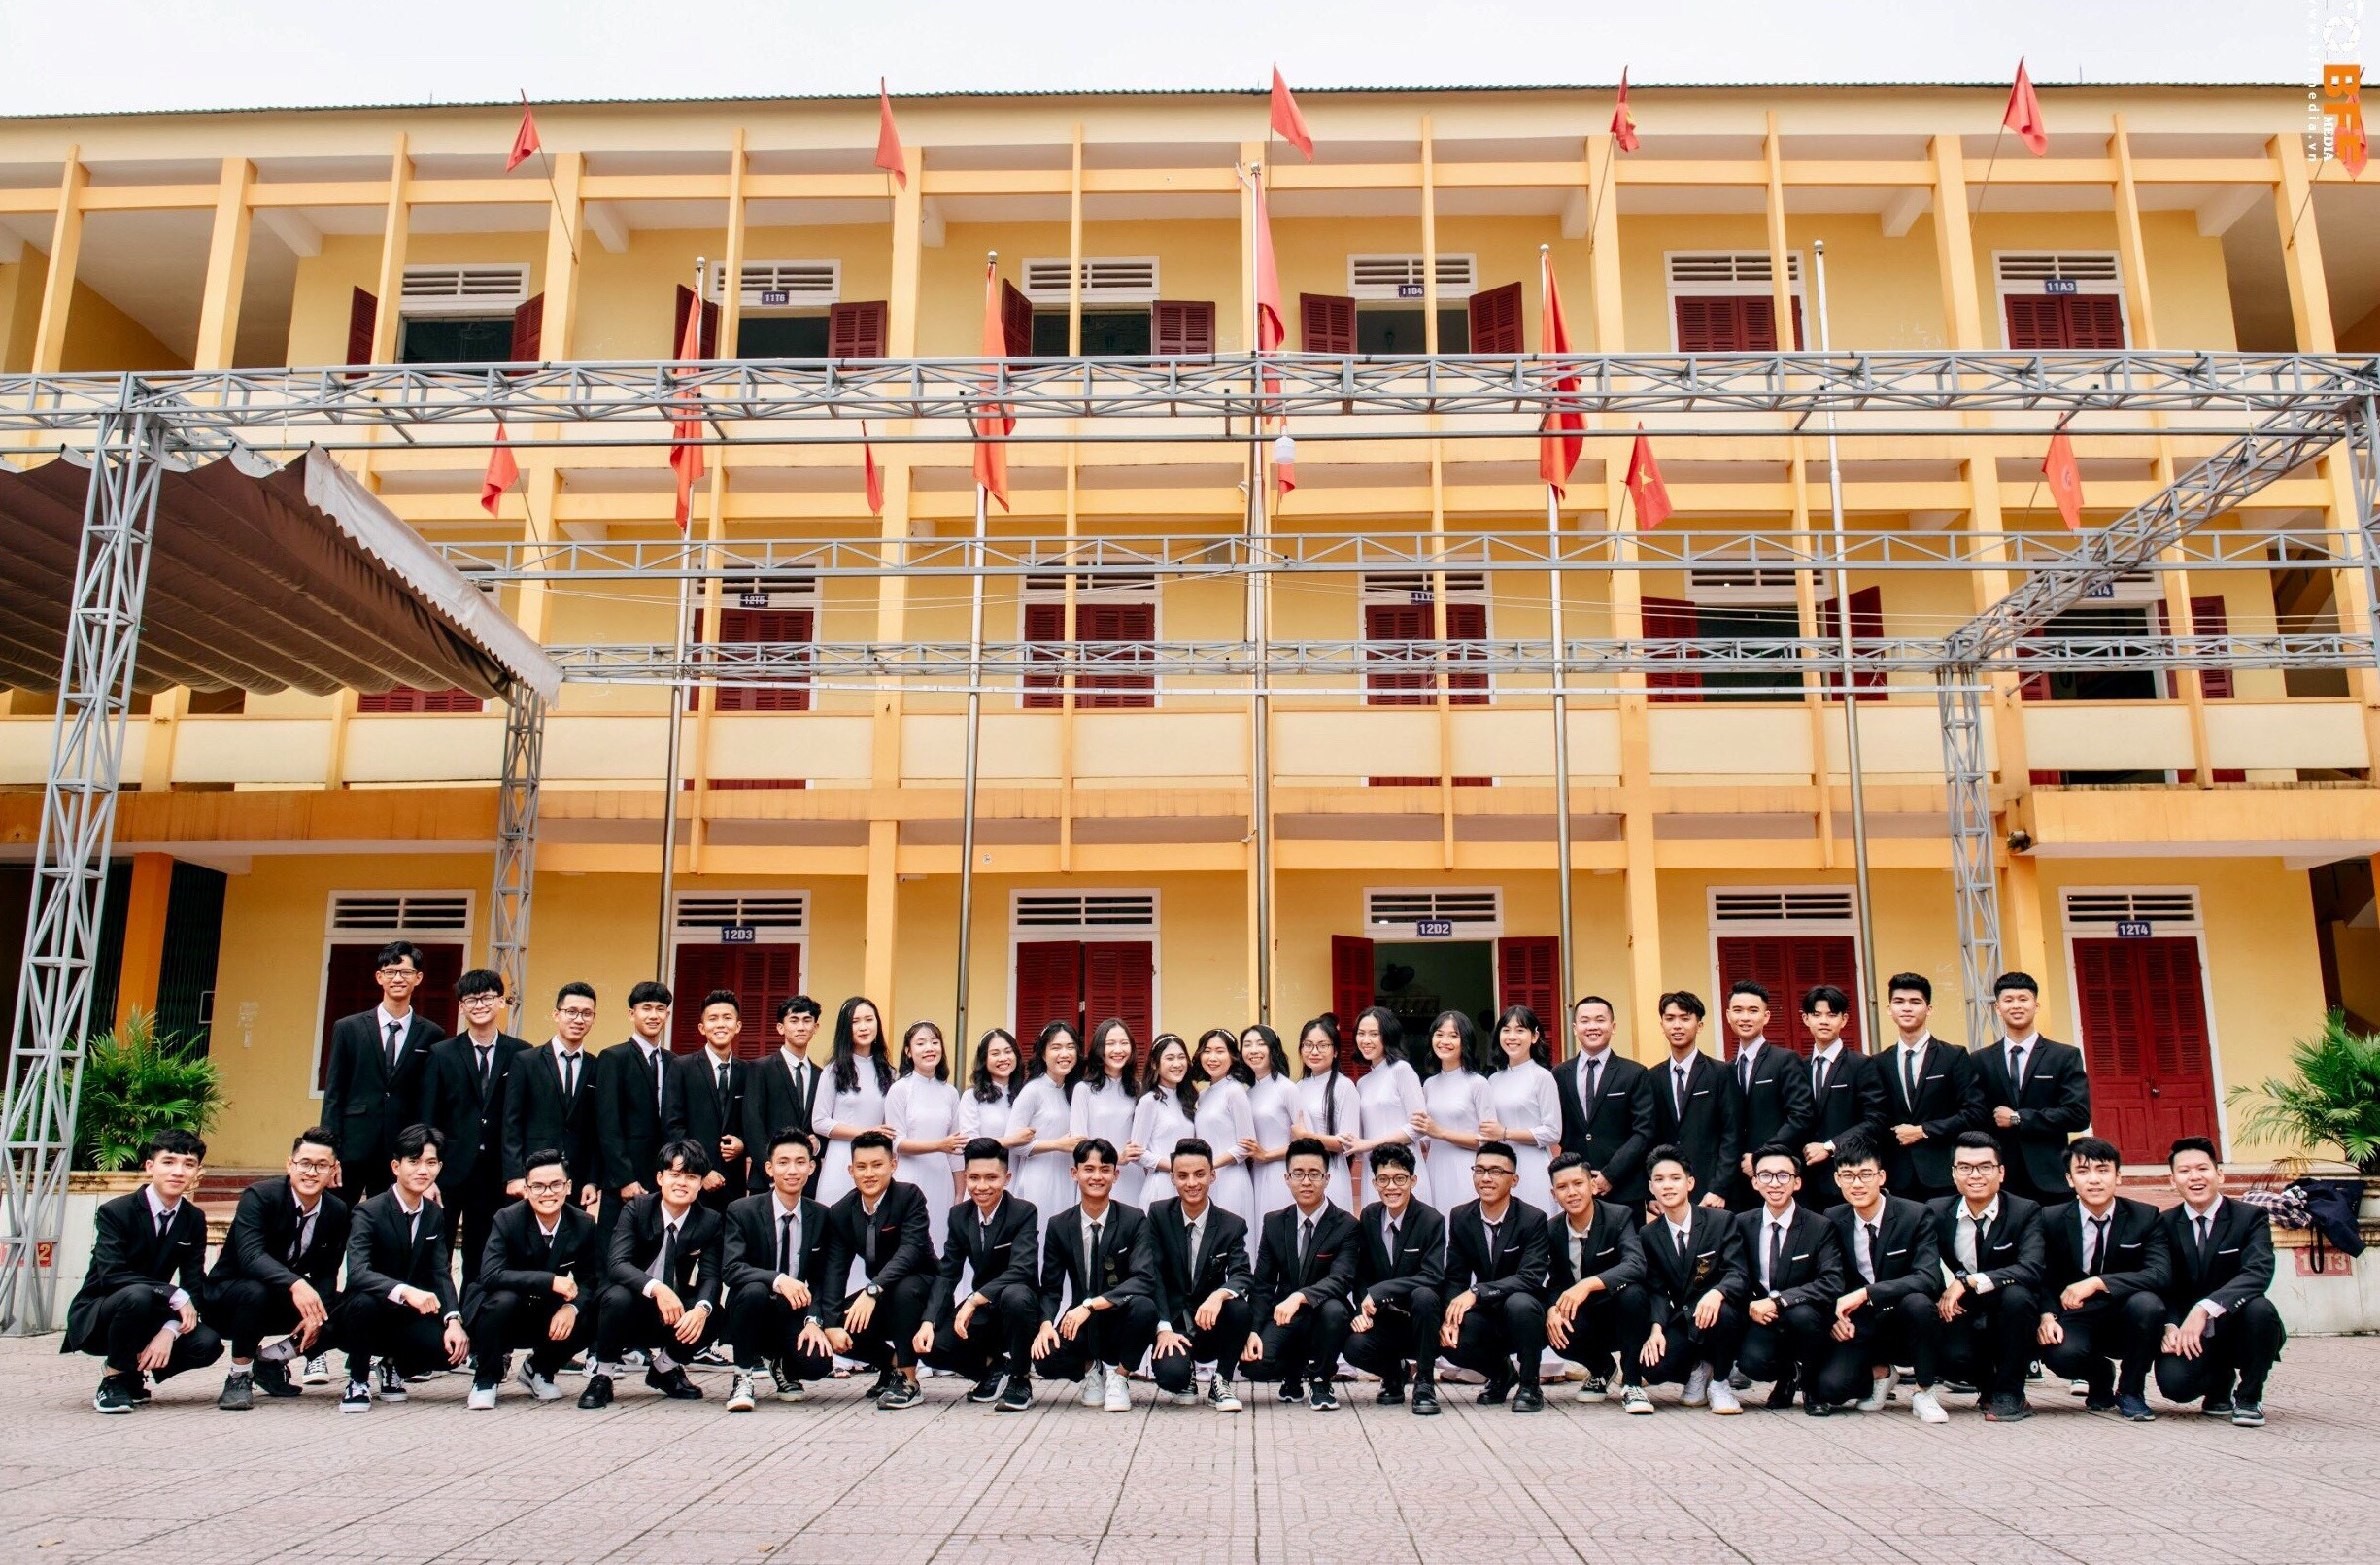 5.Lớp 12T1 luôn đi đầu về thành tích học tập của trường THPT Đô Lương1